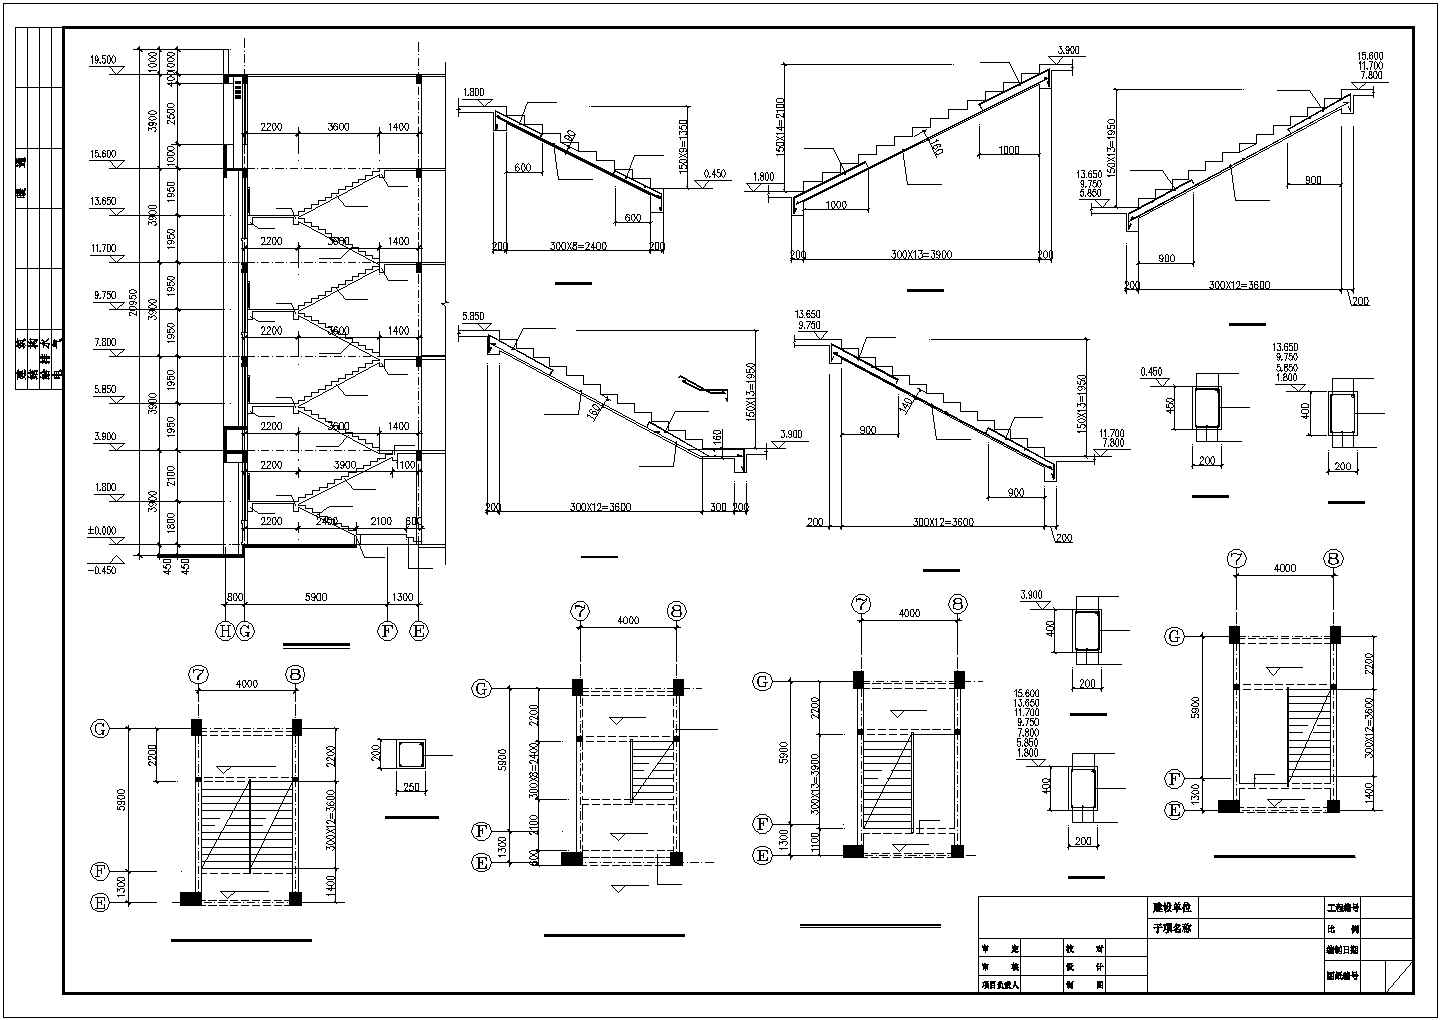 安徽某赛鸽训养中心工程综合办公楼结构设计图